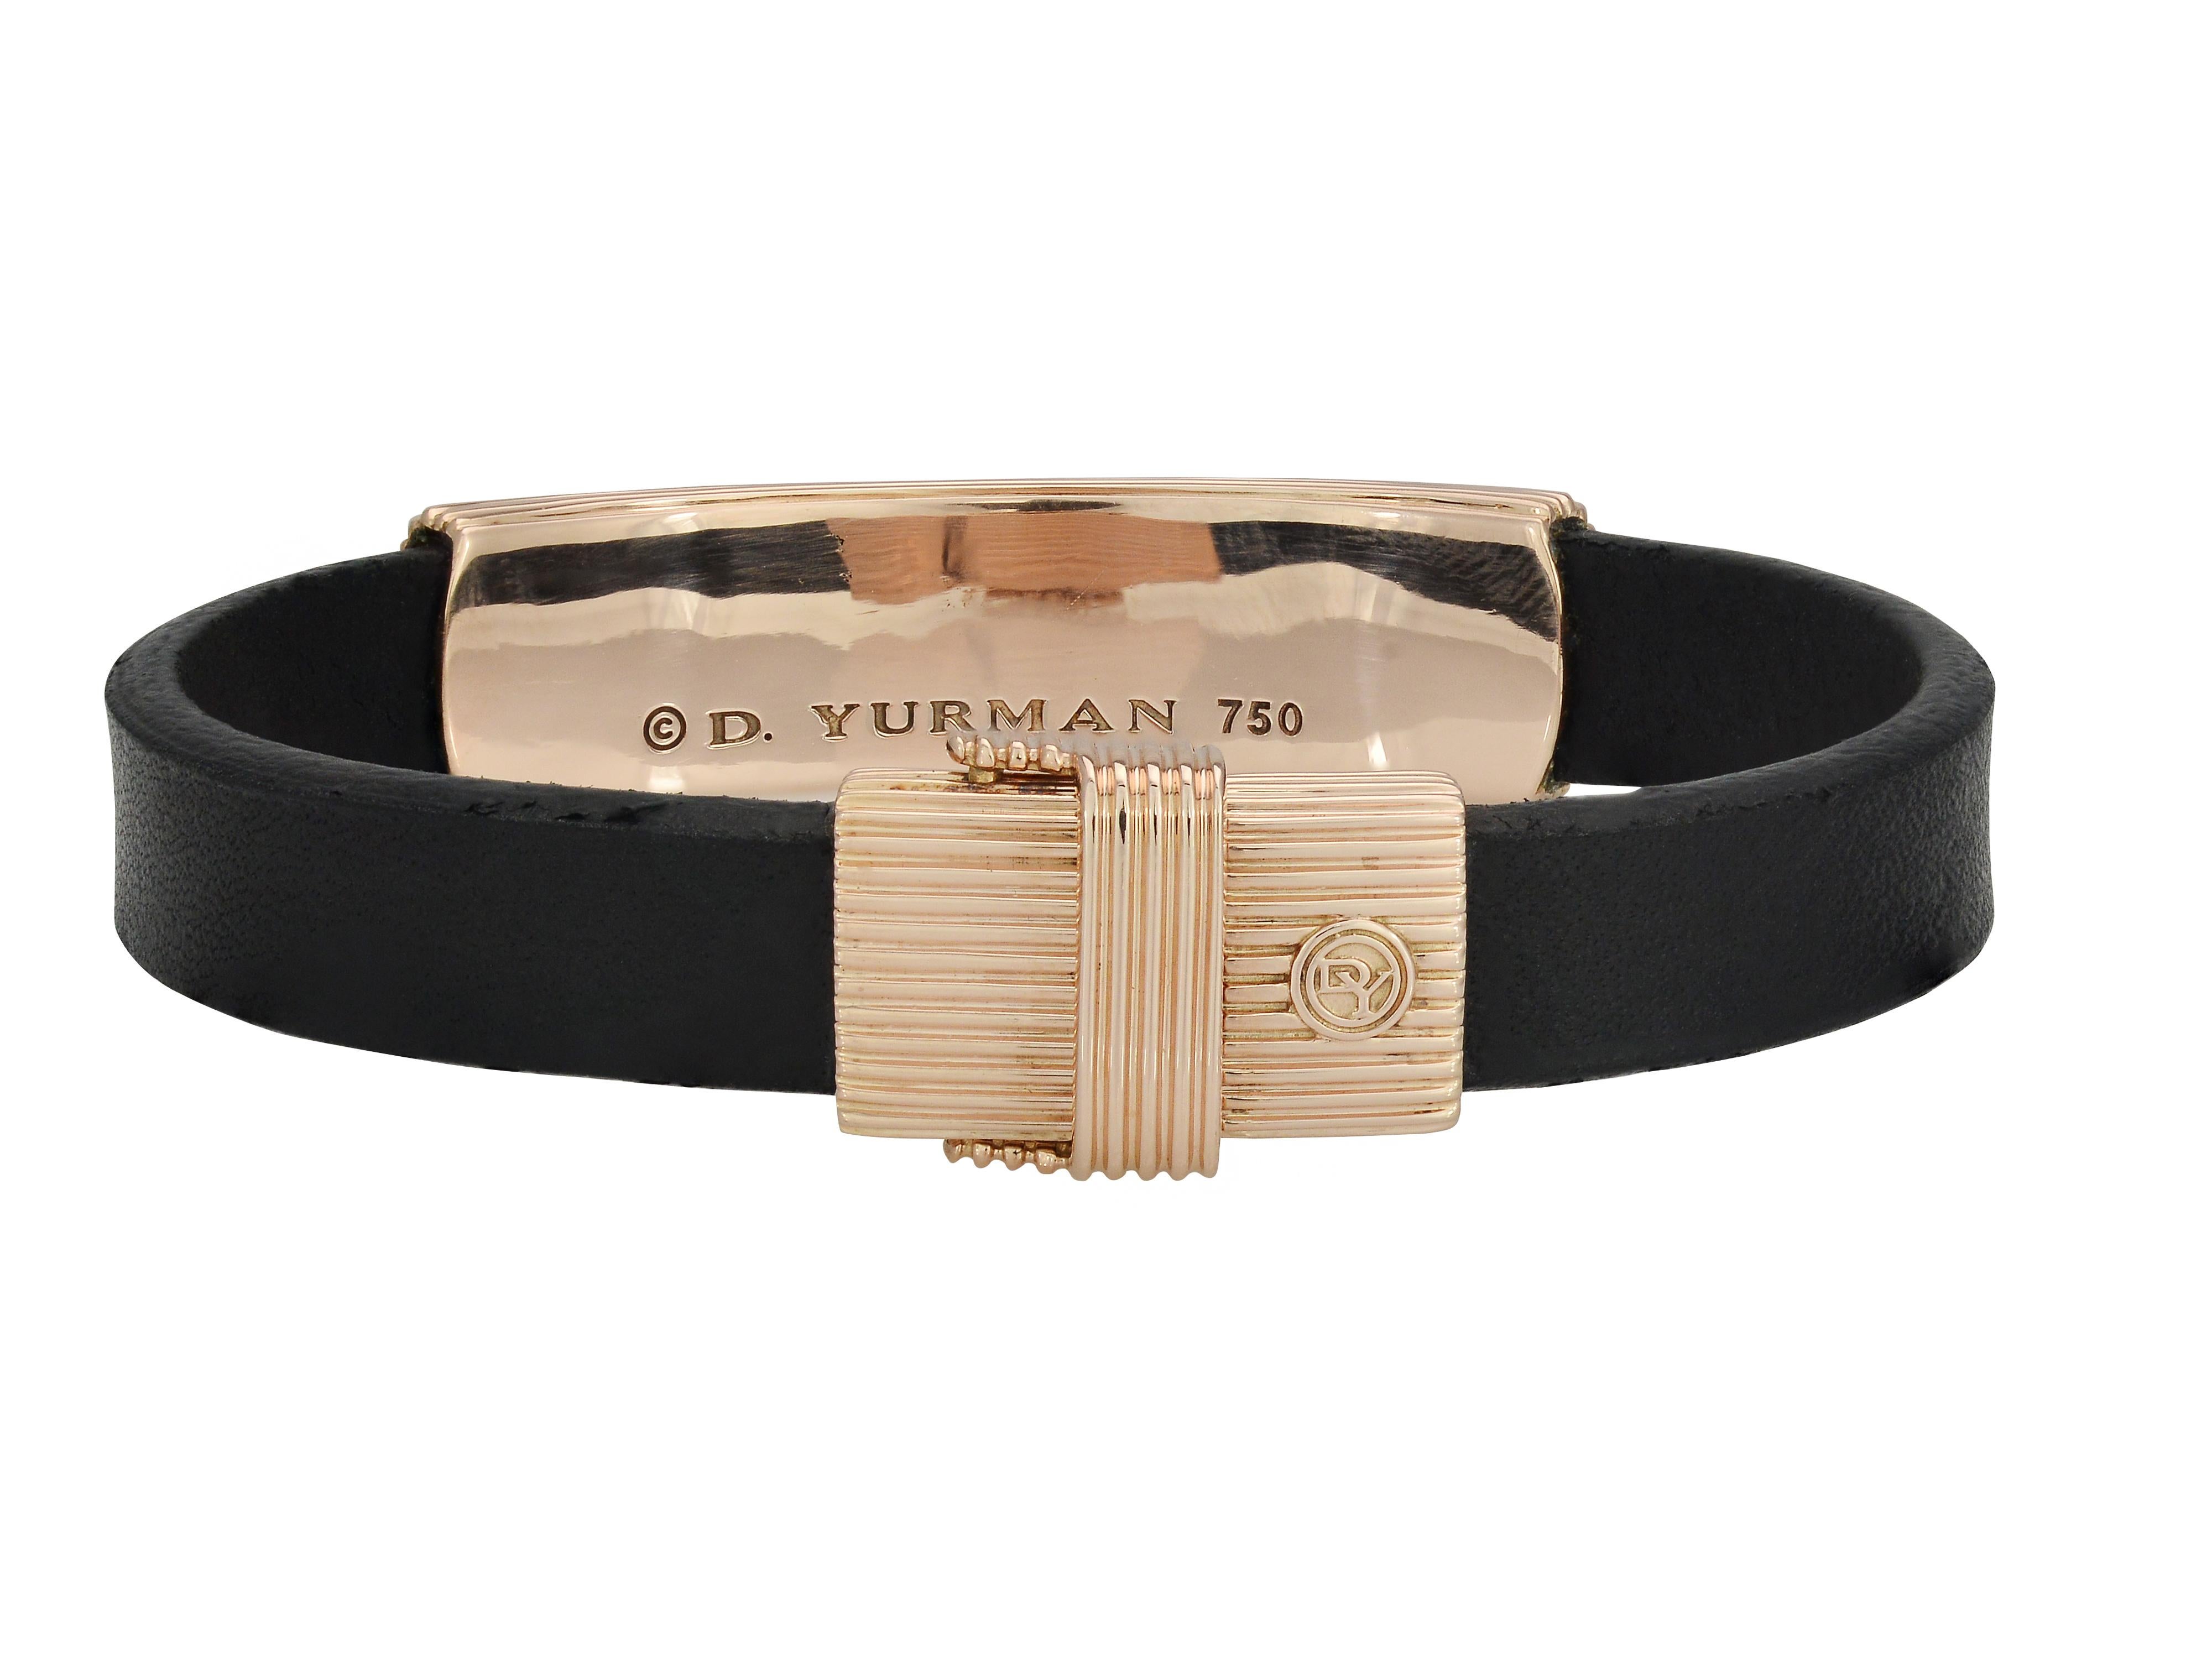 david yurman leather bracelet